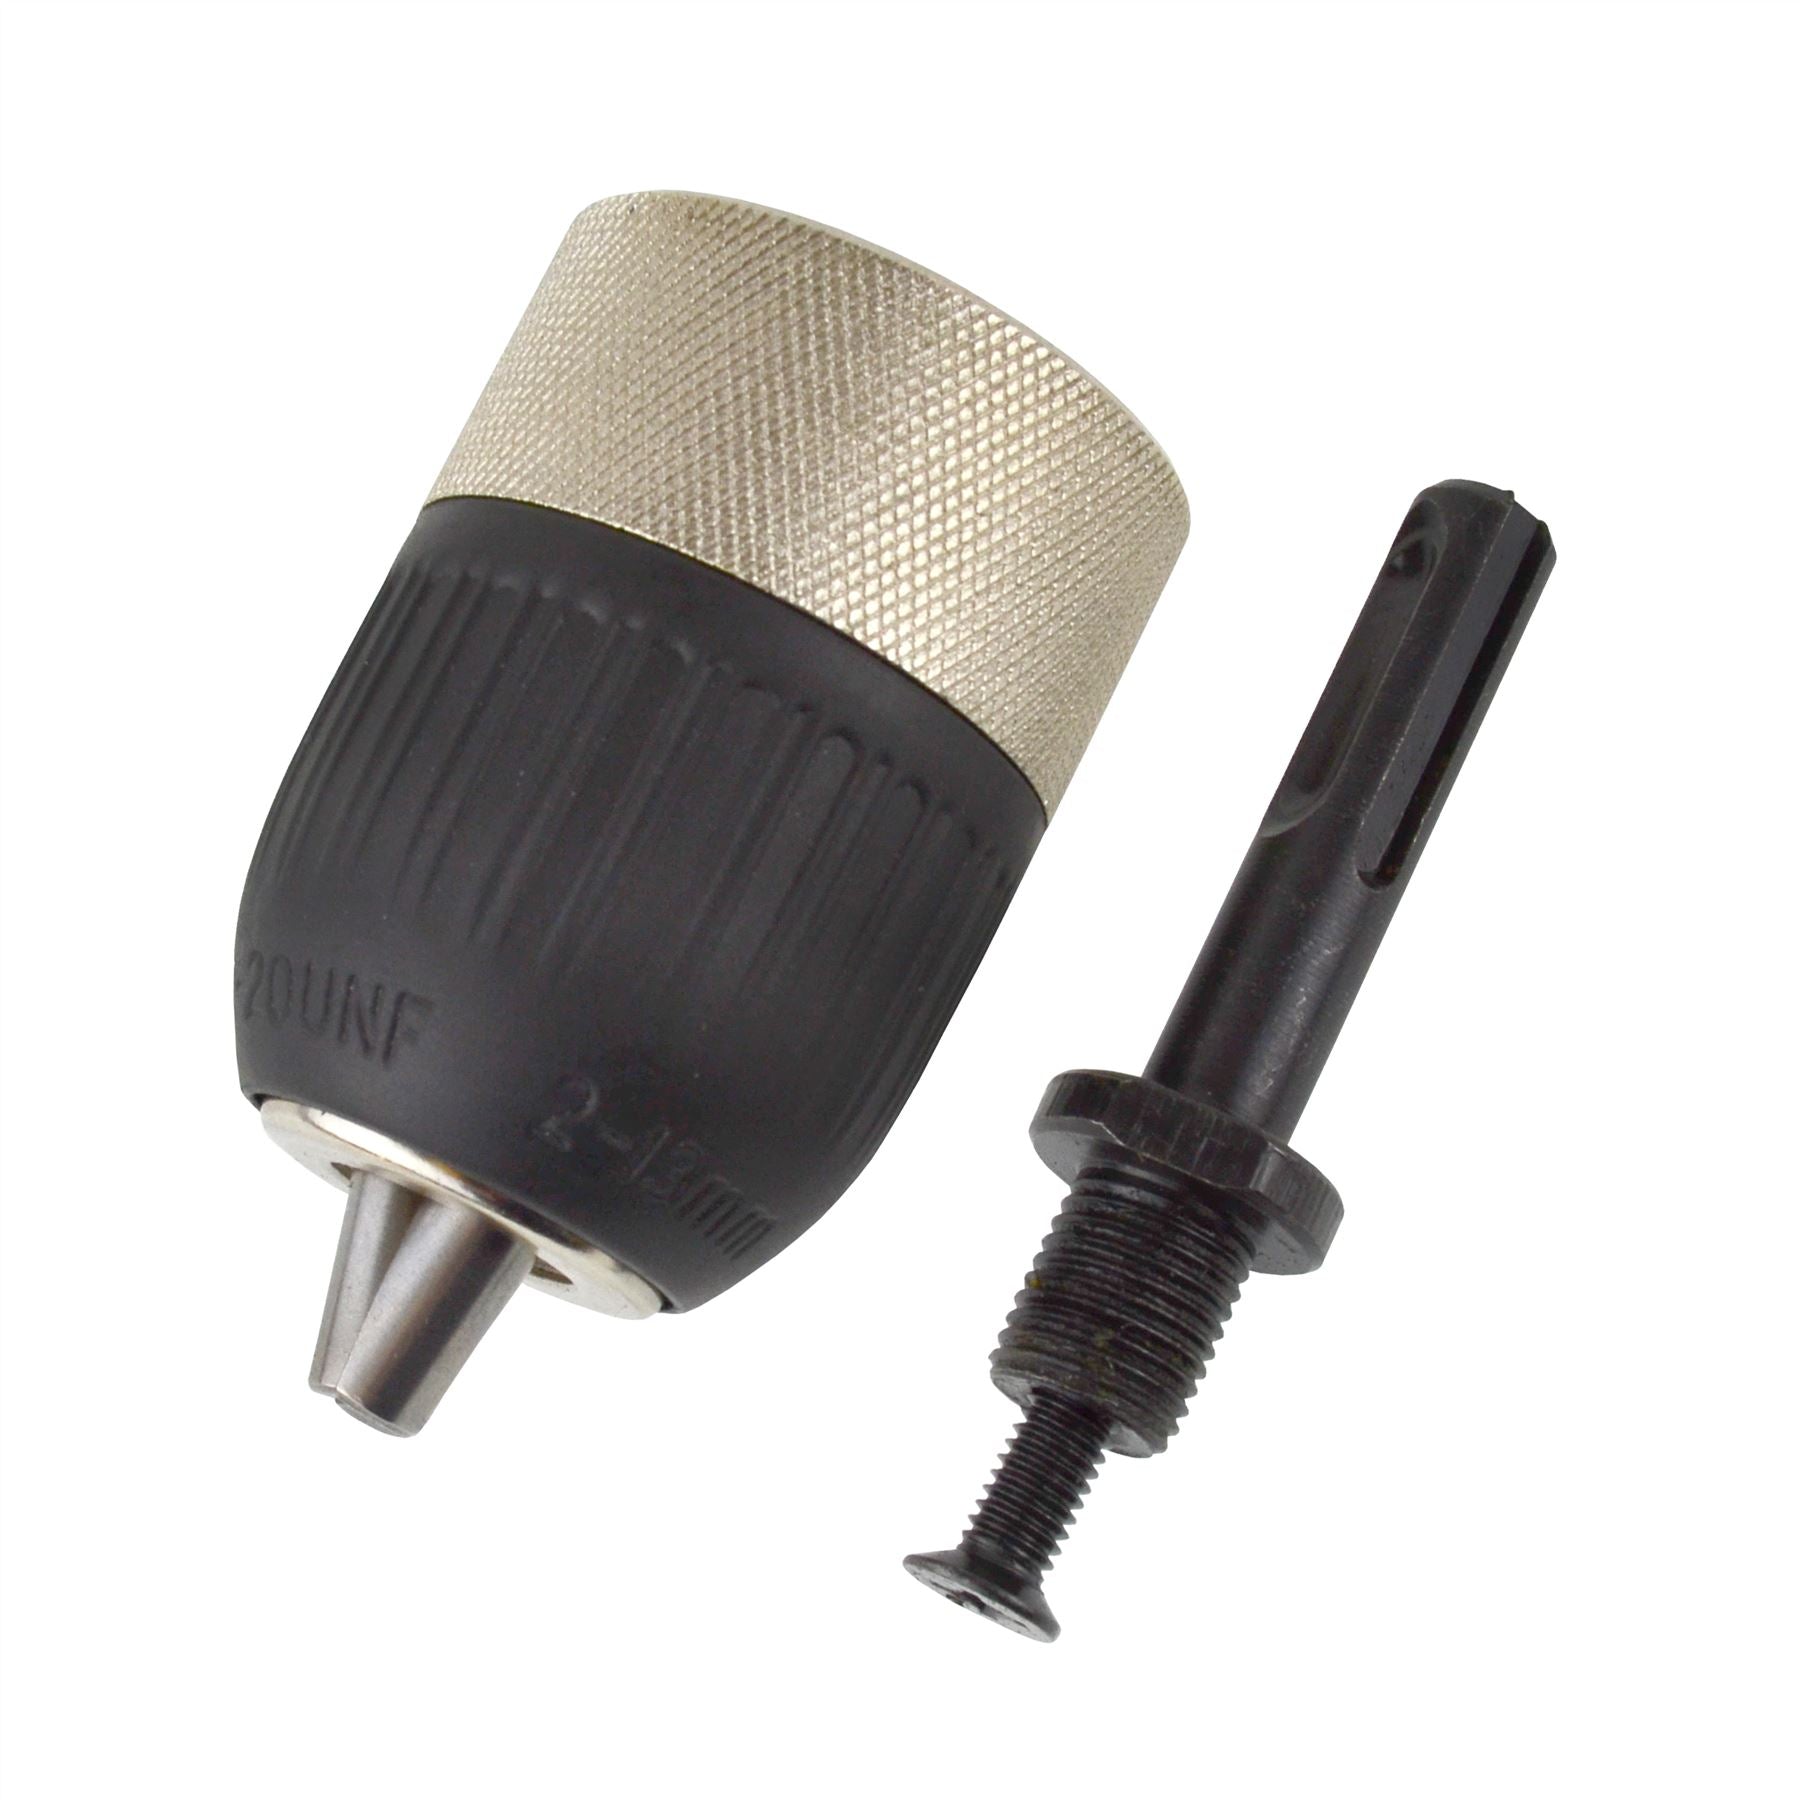 SDS Adaptor / Adapter with 1/2" / 13mm Keyless Chuck / Twist Drill Thread TE459